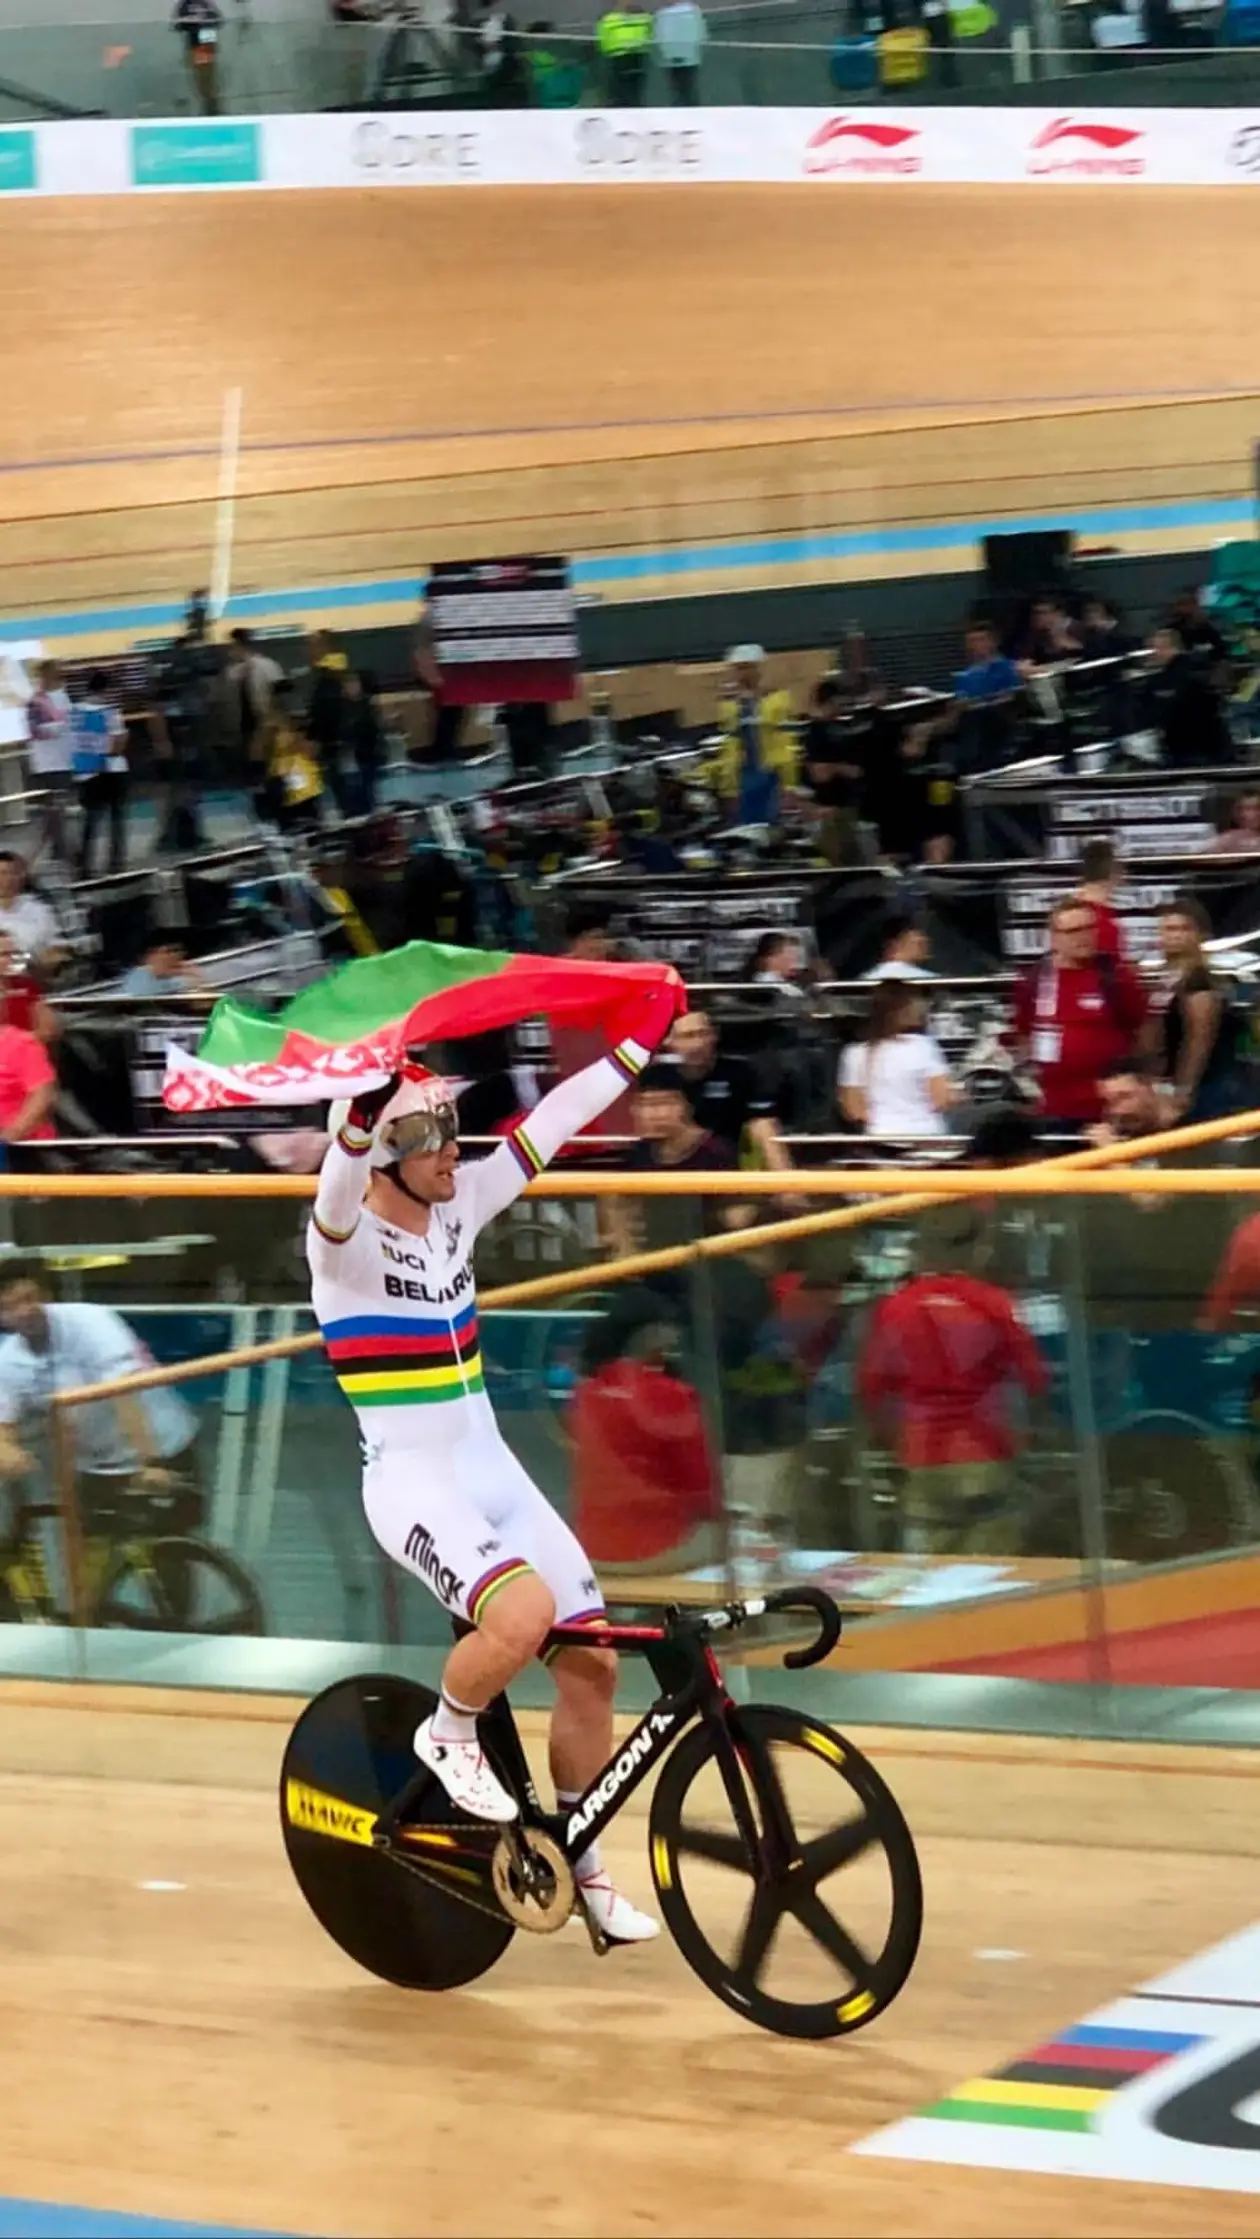 Белорус выиграл гонку и после финиша триумфально катил с флагом. Но судьи ошиблись и украли у него победу